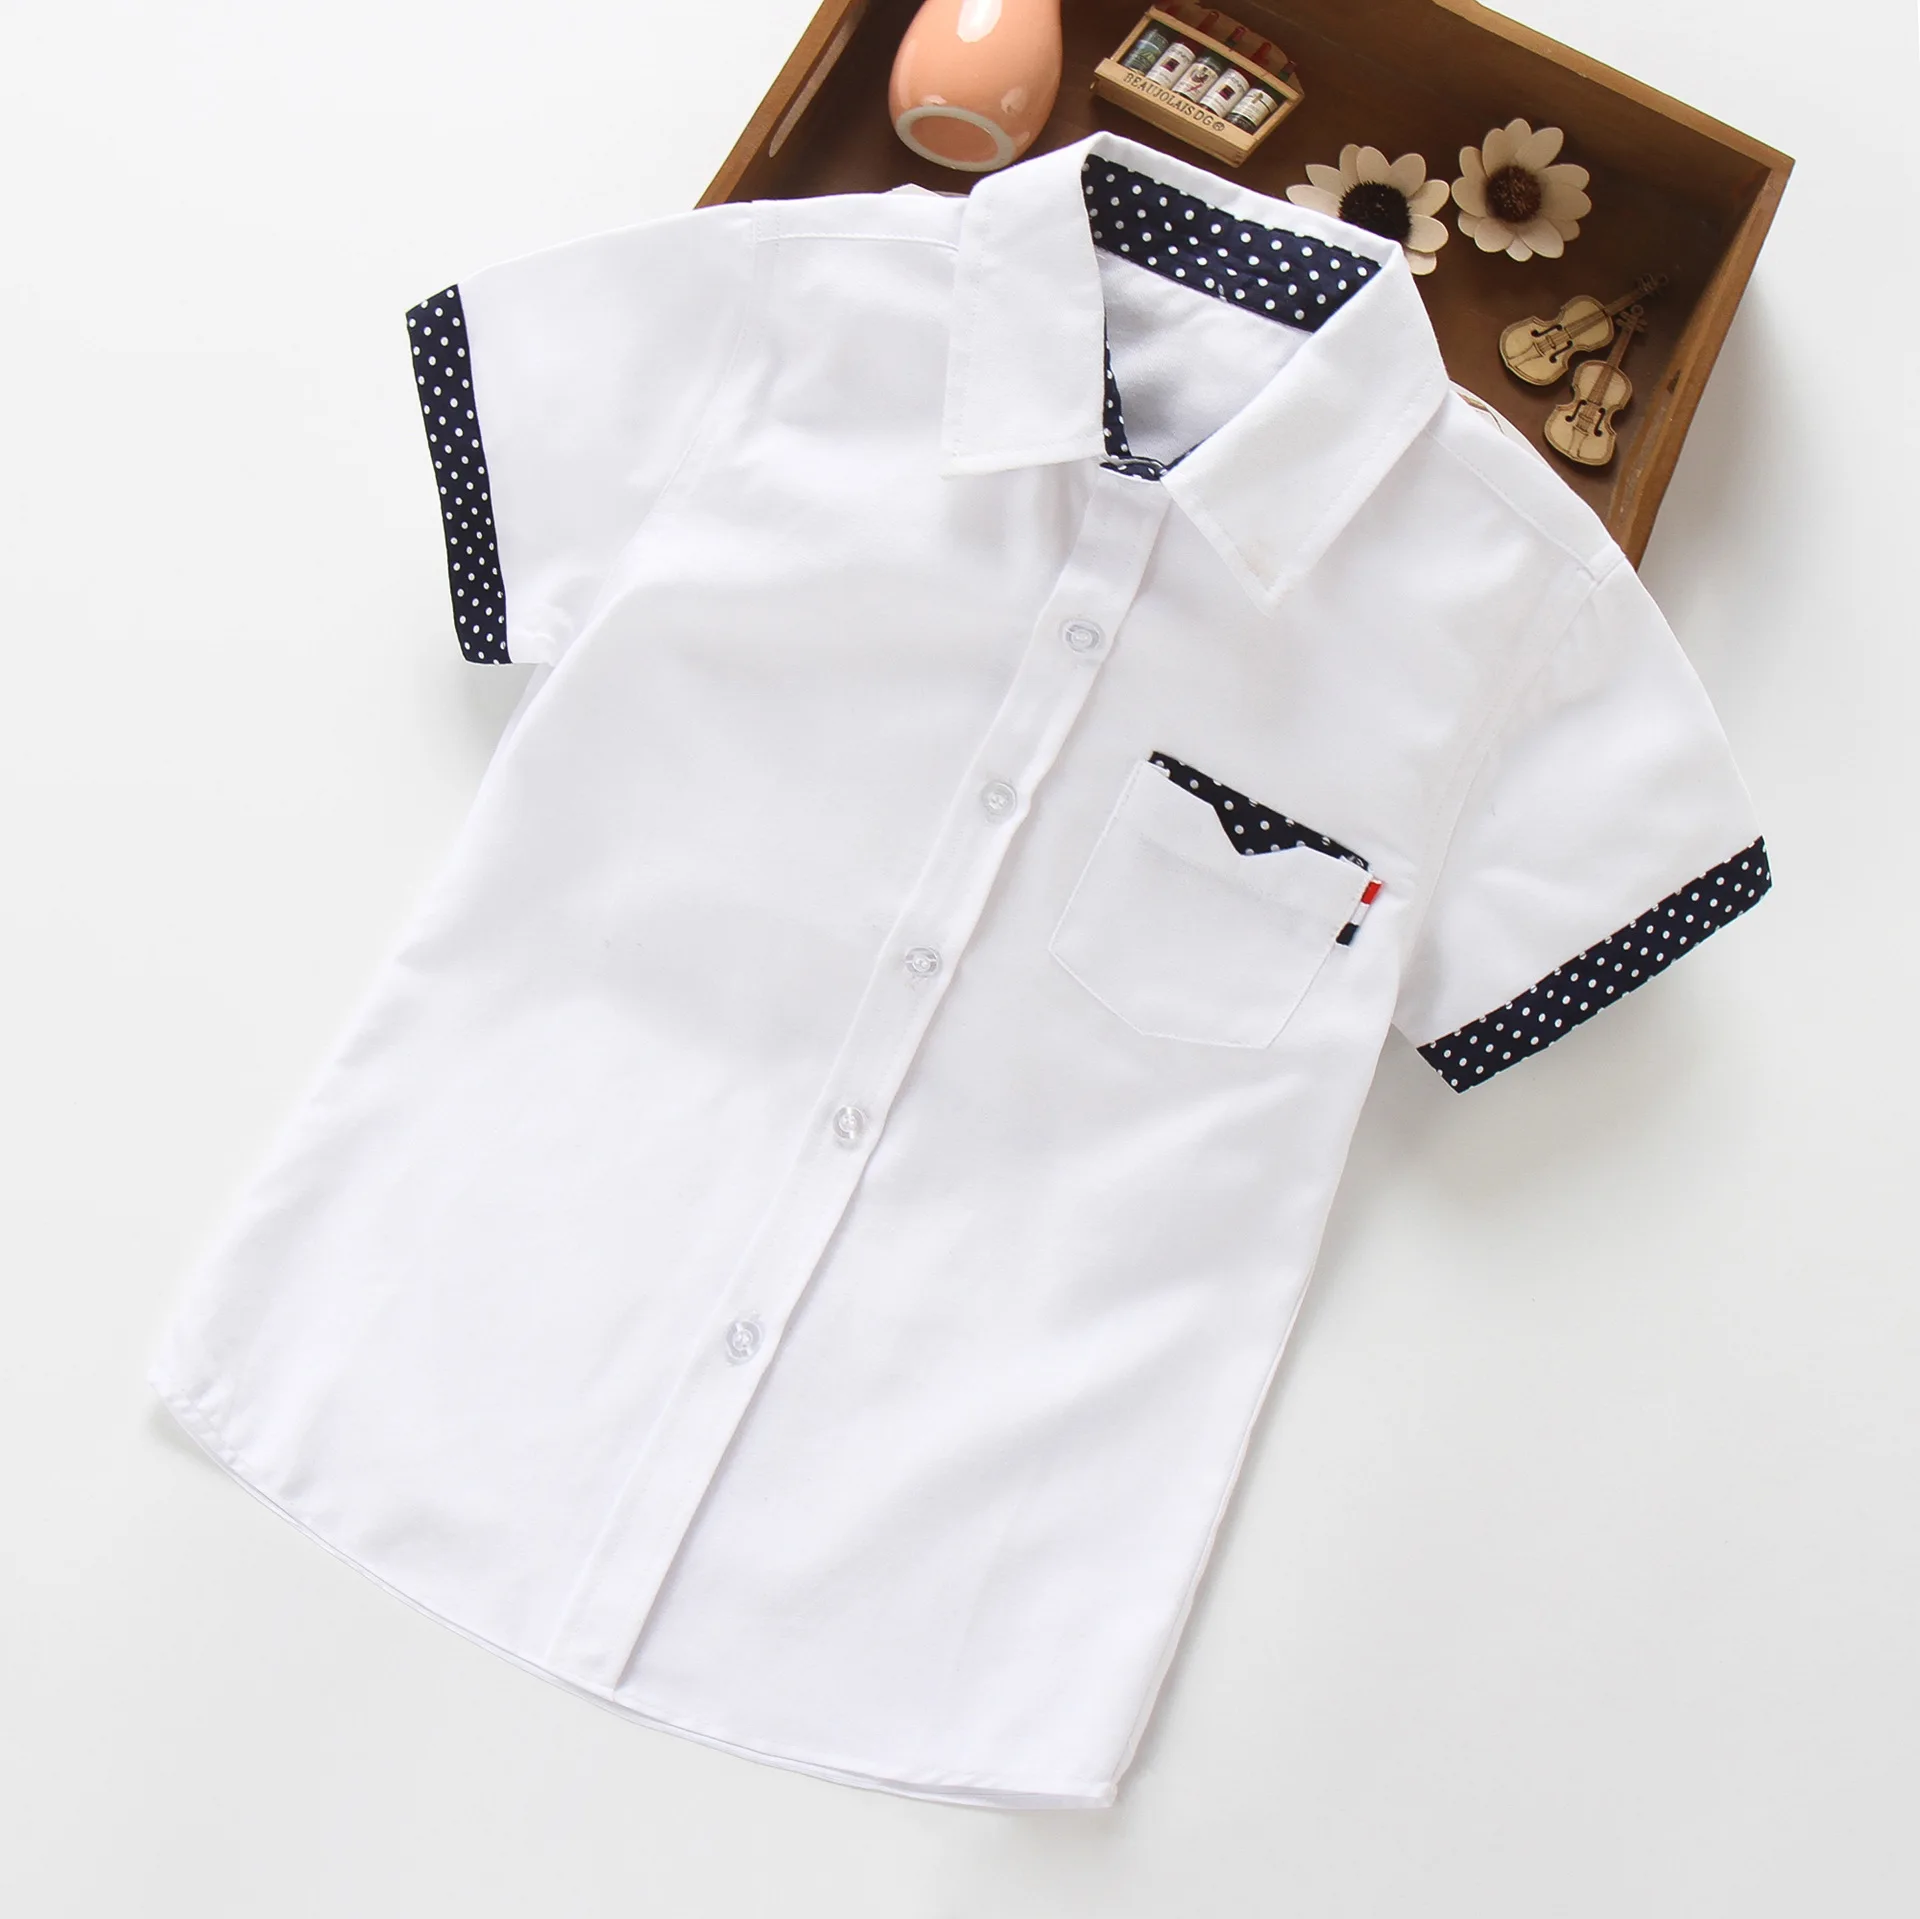 Новая летняя рубашка с короткими рукавами белая рубашка для мальчиков с героями мультфильмов одежда для студентов Модная хлопковая Детская рубашка из ткани "Оксфорд"